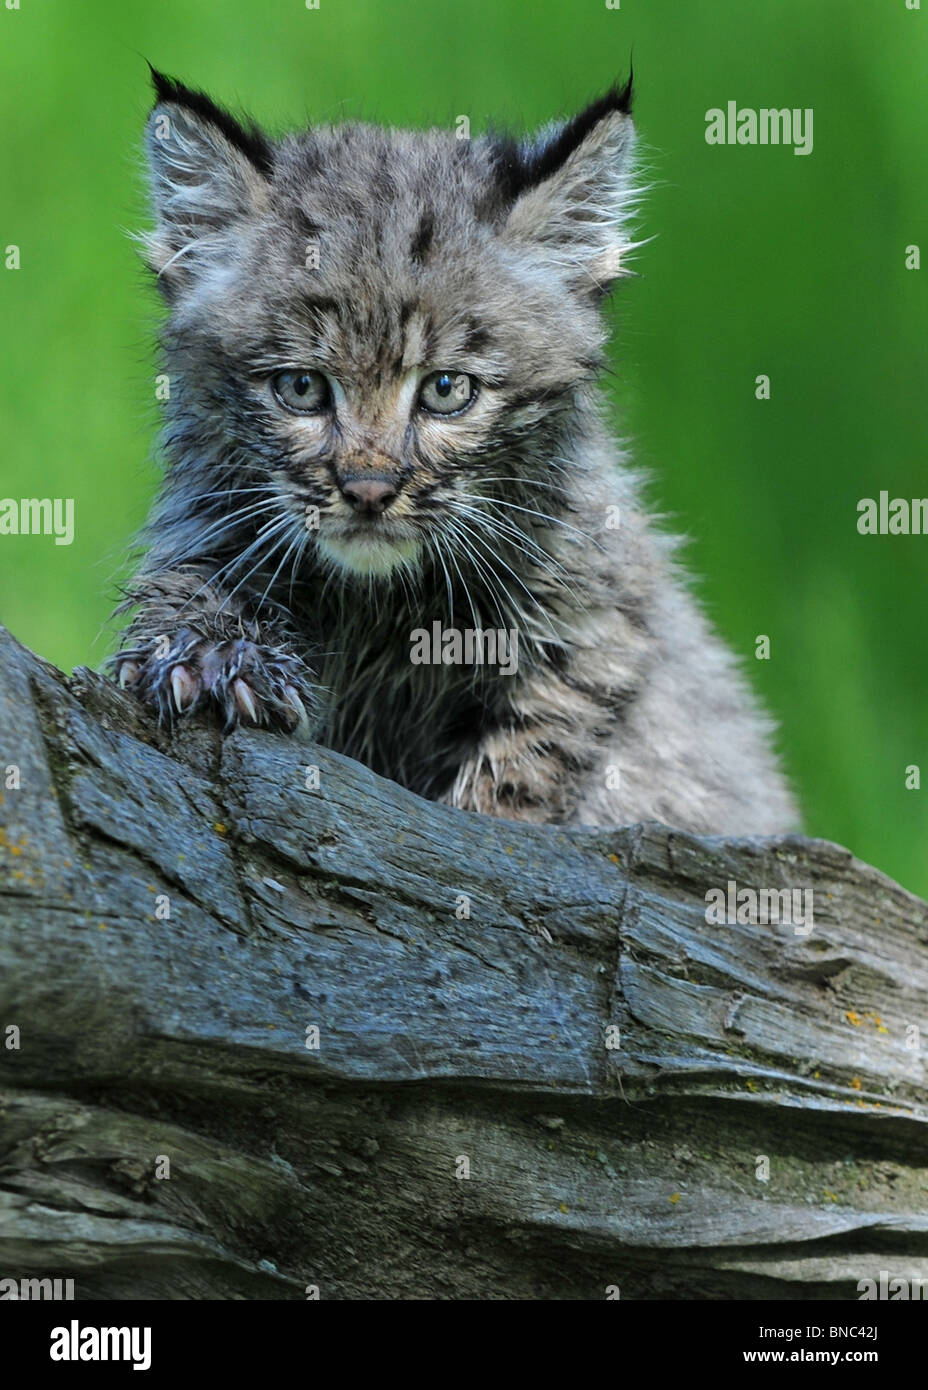 Baby bobcat closeup Stock Photo